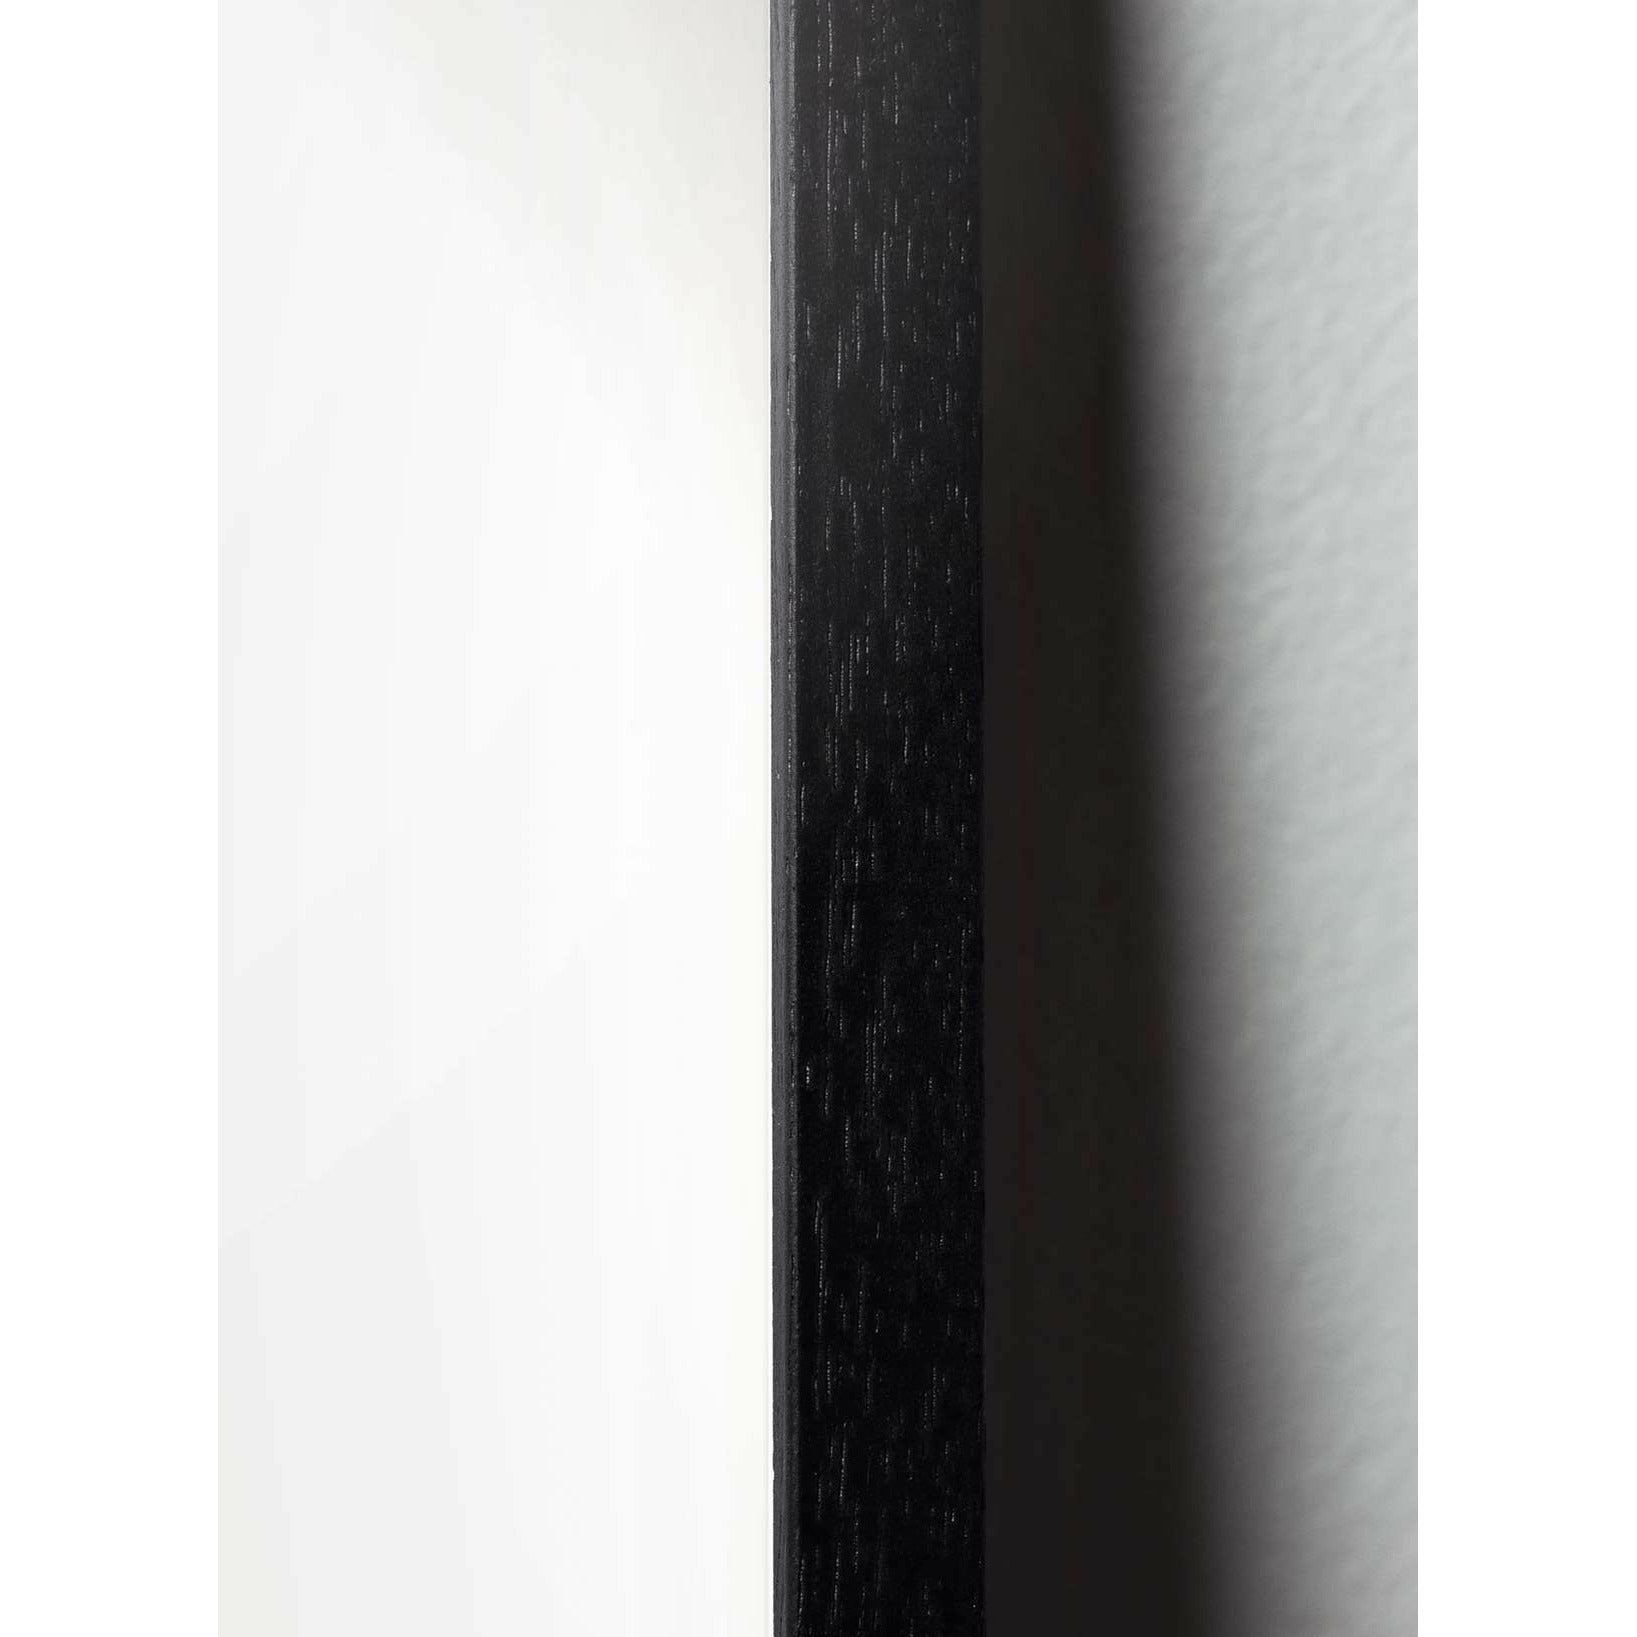 Brainchild Pelican Classic -affisch, ram i svart -målat trä 70x100 cm, mörkblå bakgrund